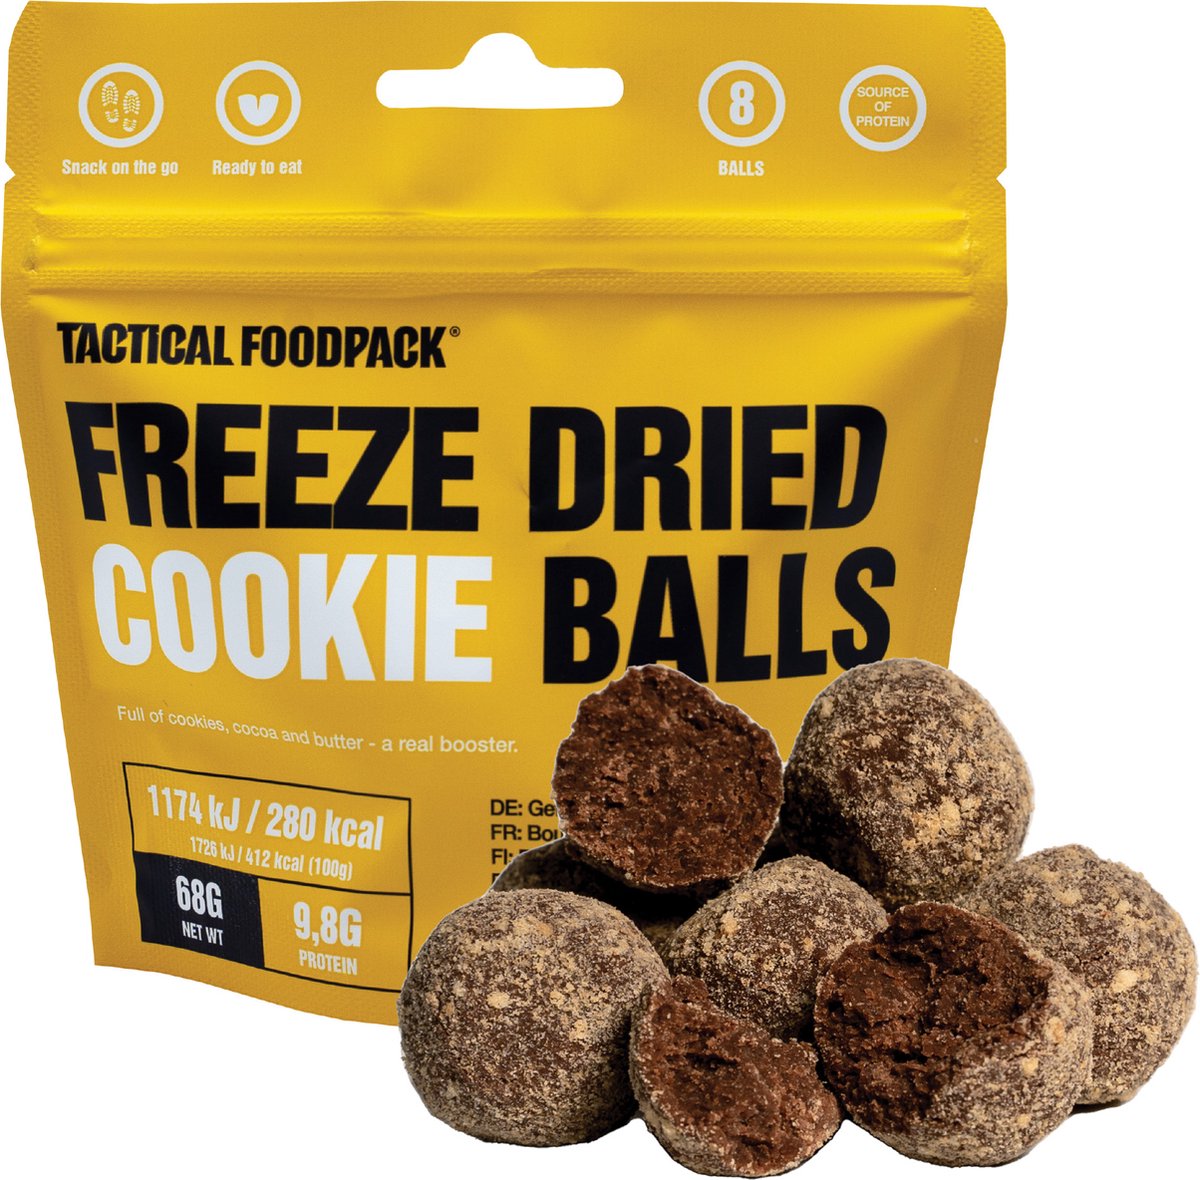 Tactical FoodPack Freeze-Dried Cookie Balls (40gram) - Koek en chocoladeballen - 280 kcal - buitensportvoeding - outdoorsnack - vriesdroog - survival eten - prepper - 8 jaar houdbaar - snackverpakking